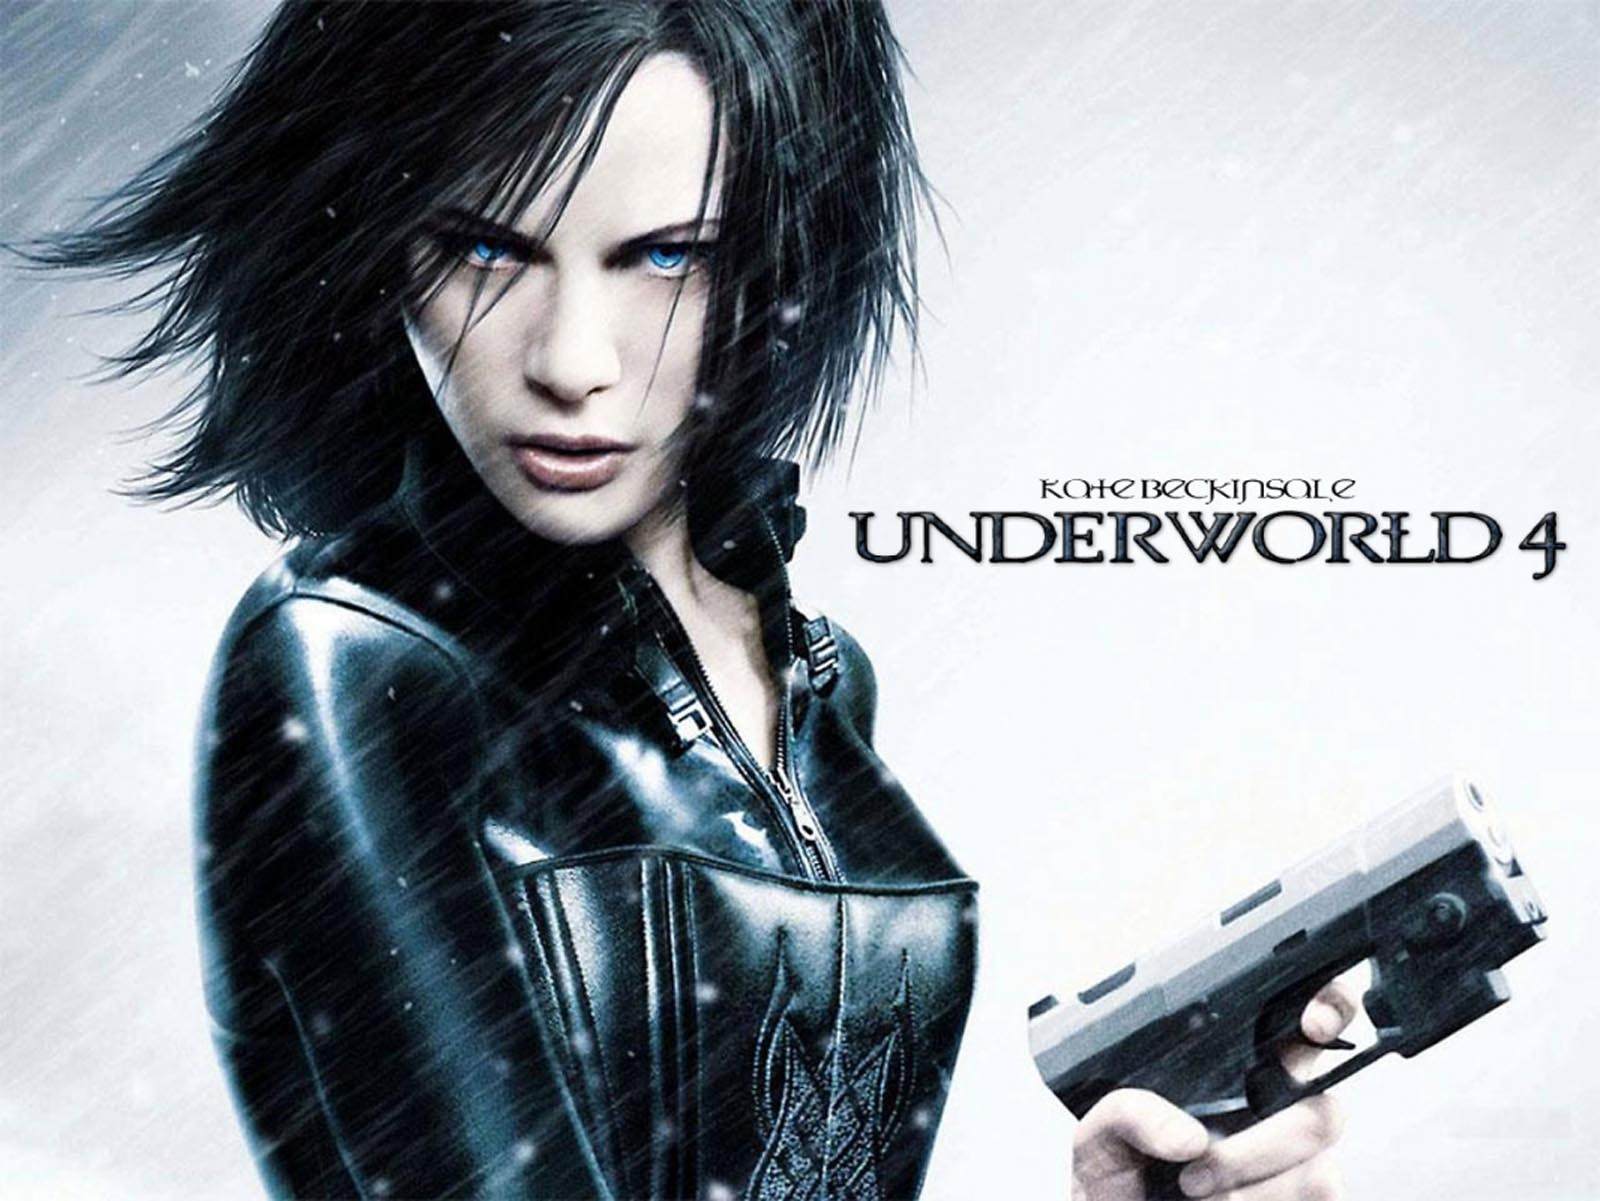 Movie Underworld: Evolution HD Wallpaper | Background Image